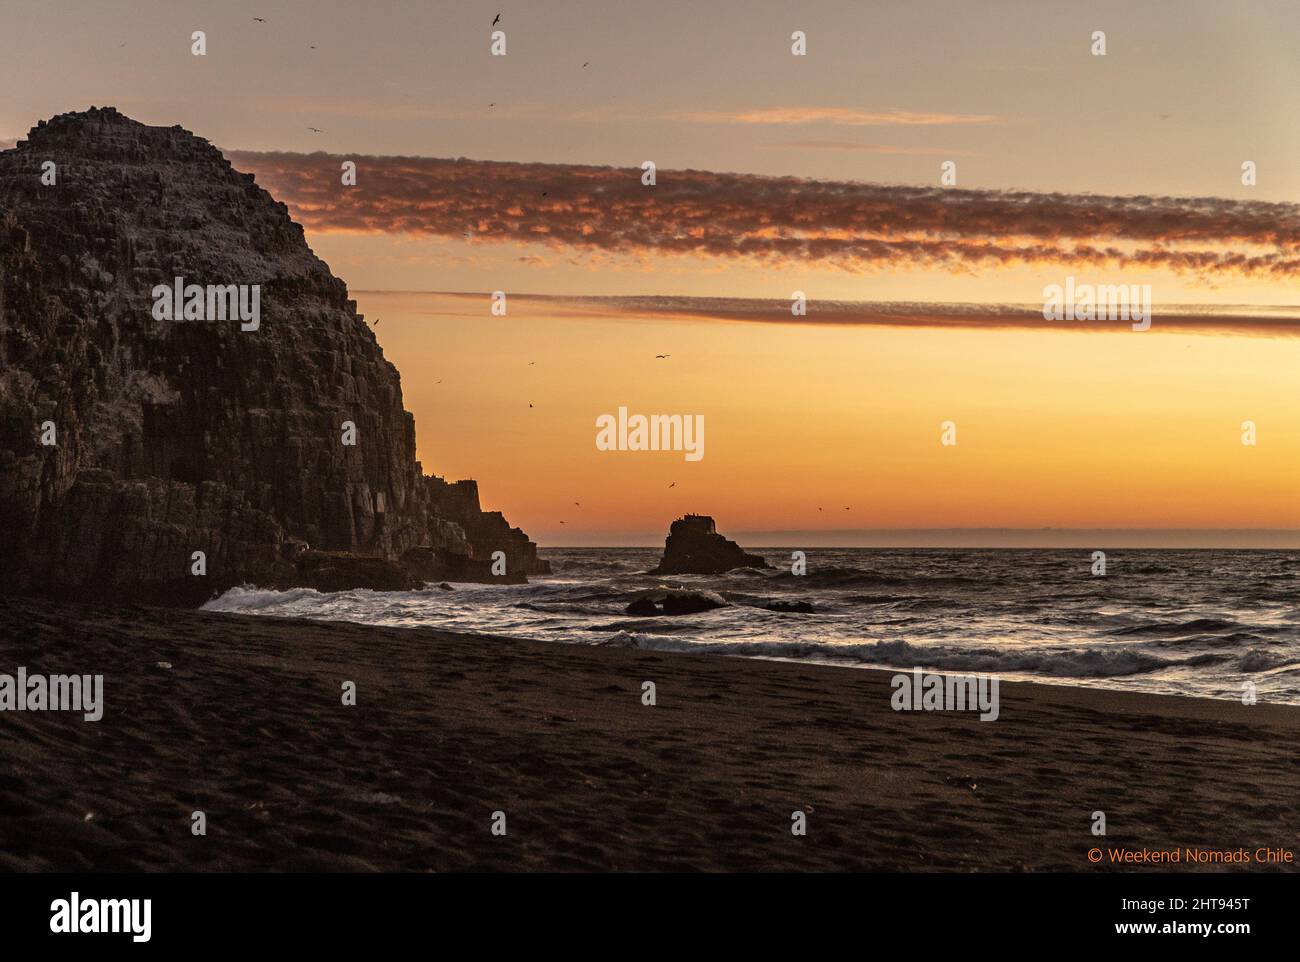 Une belle vue sur la nature du coucher de soleil sur la plage avec les oiseaux volants Banque D'Images